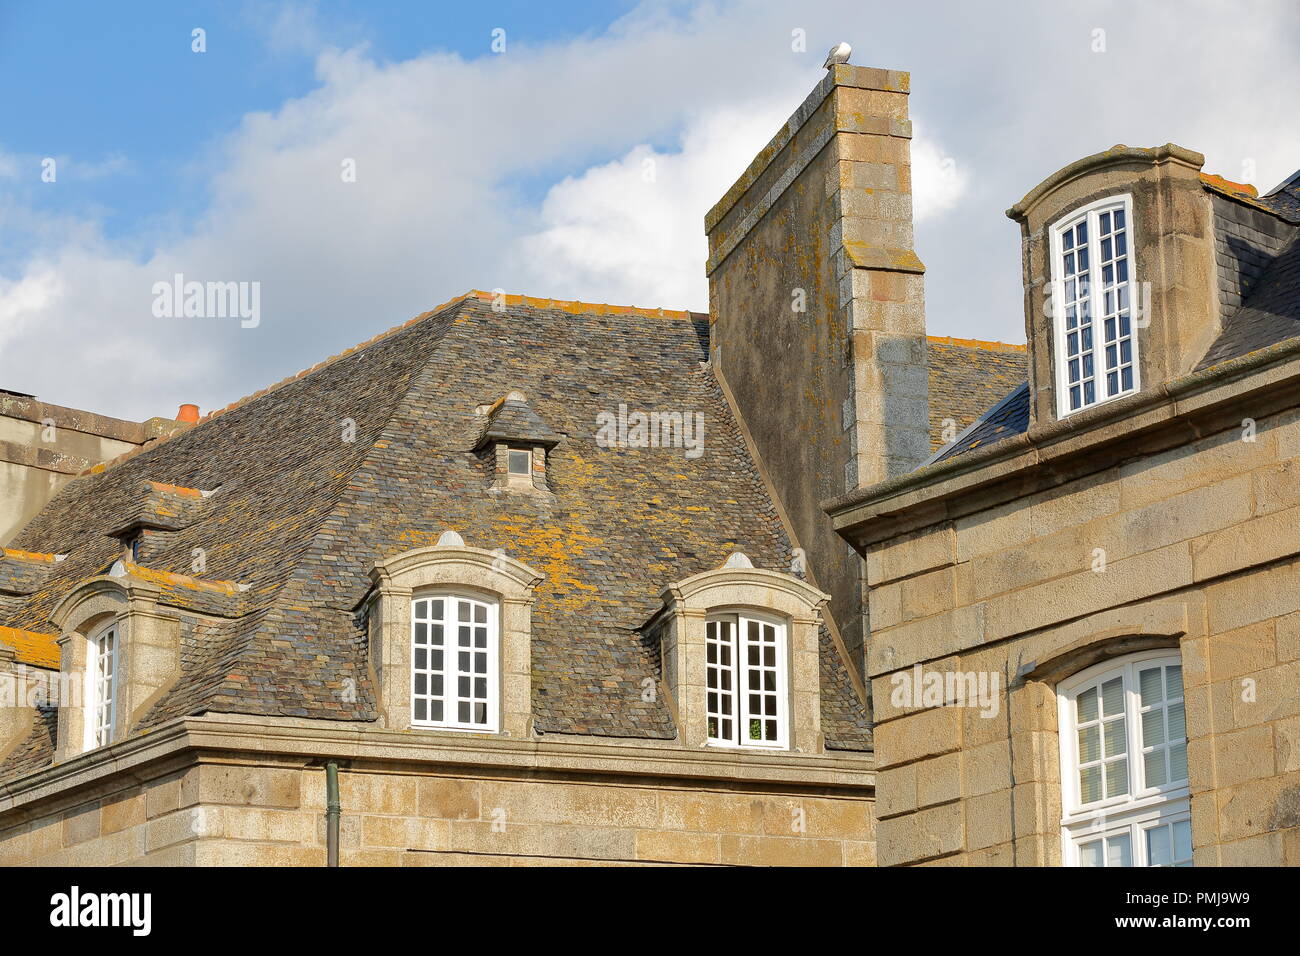 Close-up sur les façades de maisons traditionnelles avec les cheminées et les toits, situé à l'intérieur de la ville fortifiée de Saint Malo, Bretagne, France Banque D'Images